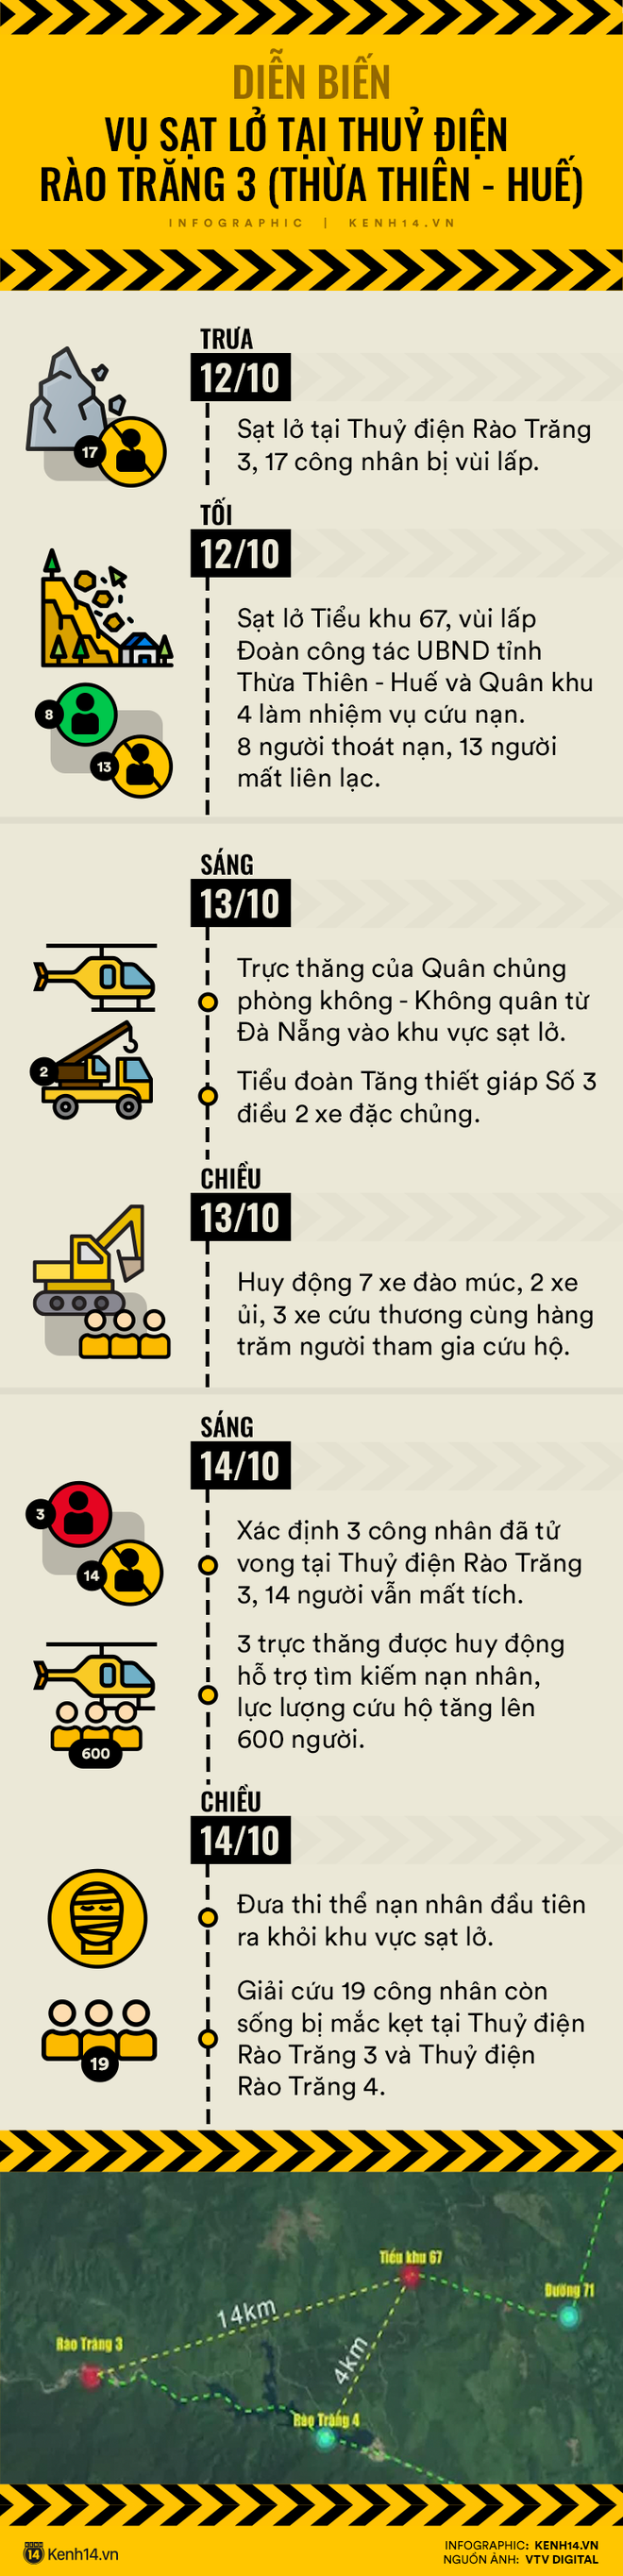 Infographic: Diễn biến tại thuỷ điện Rào Trăng 3 sau 2 ngày xảy ra sạt lở kinh hoàng - Ảnh 1.